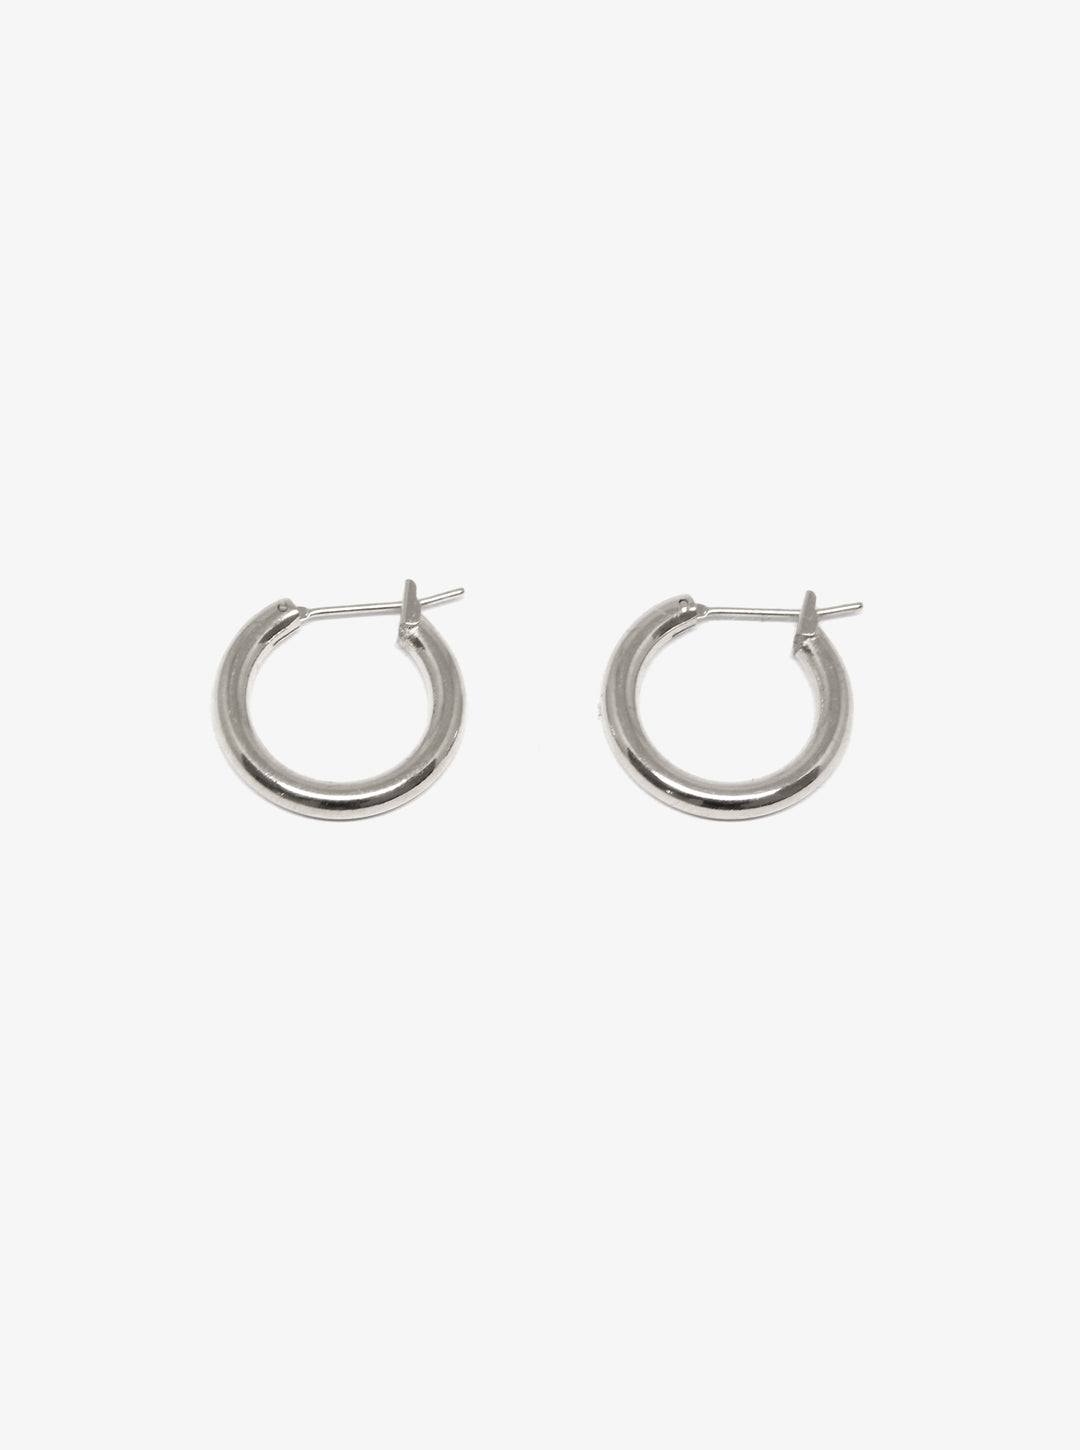 llayers-mens-women-silver-hoop-earrings-minimal-designer-jewelry-in-brookyn-new-york-hoop001-F3